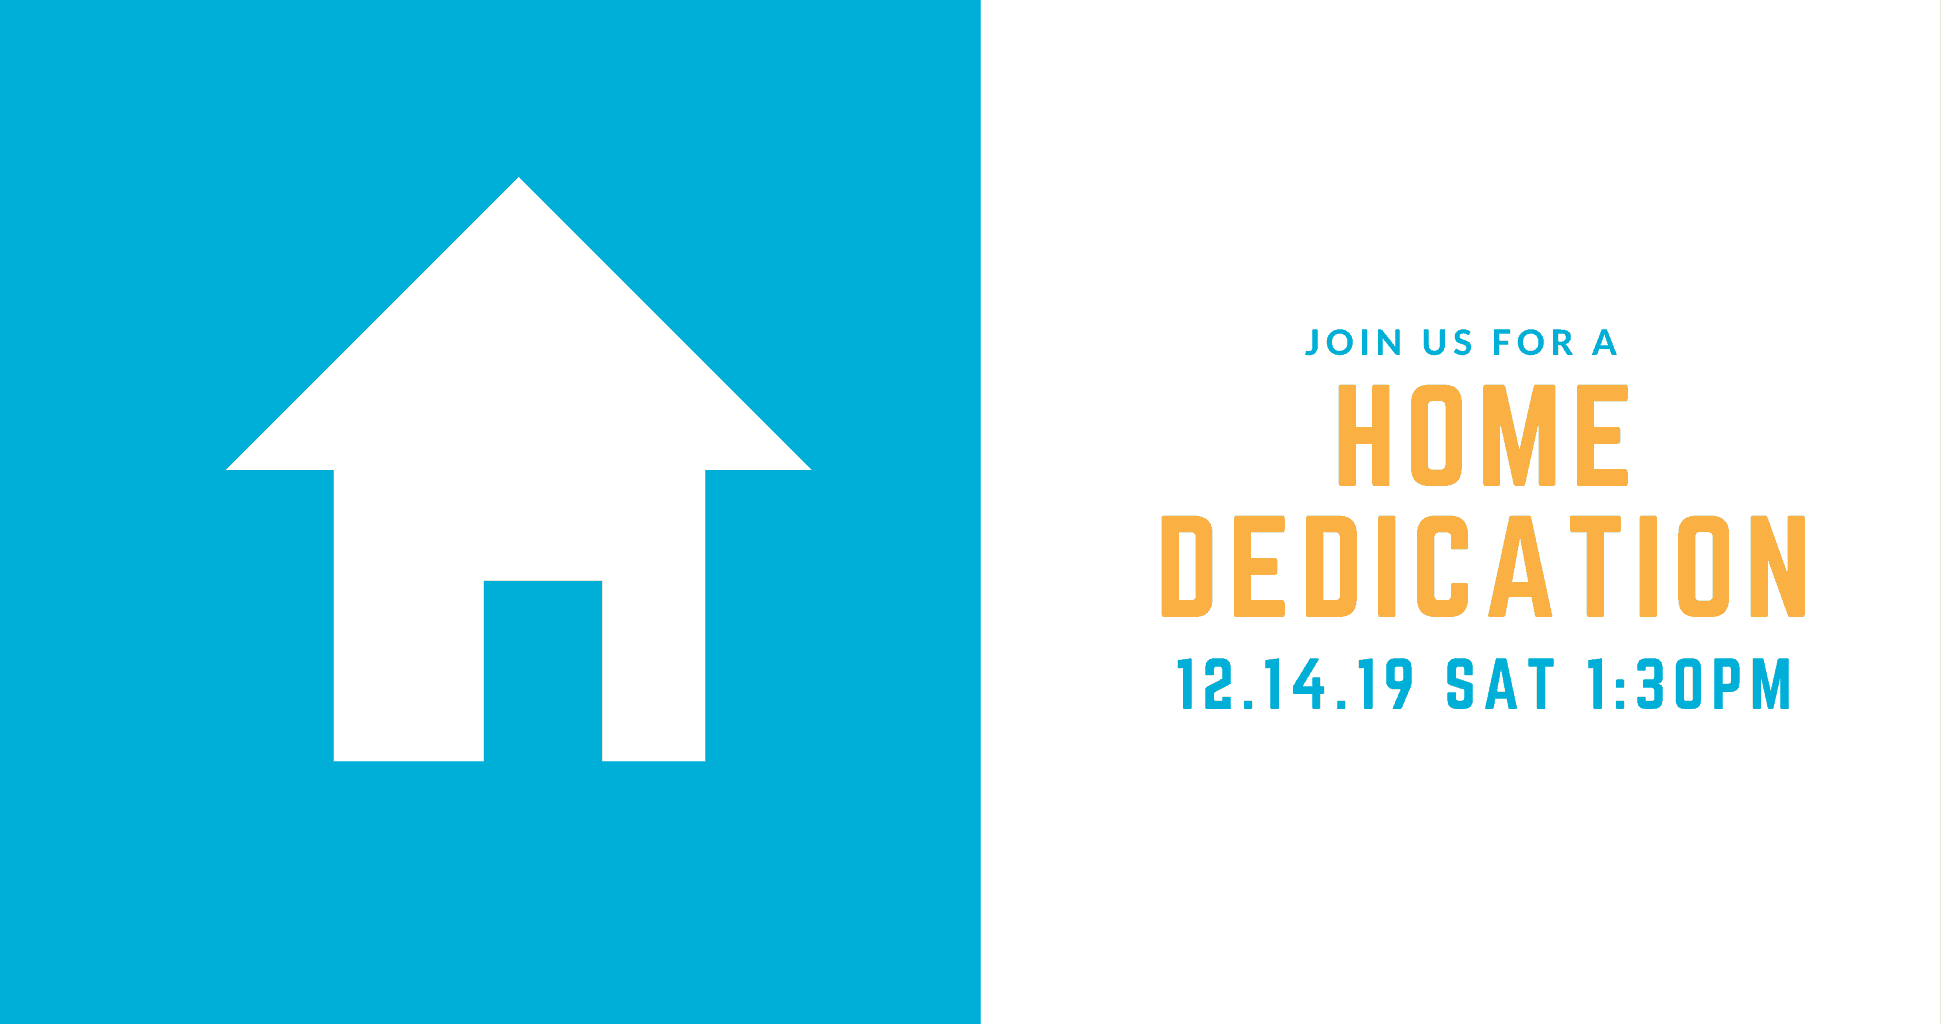 Home Dedication: Dec. 14 at 1:30 PM